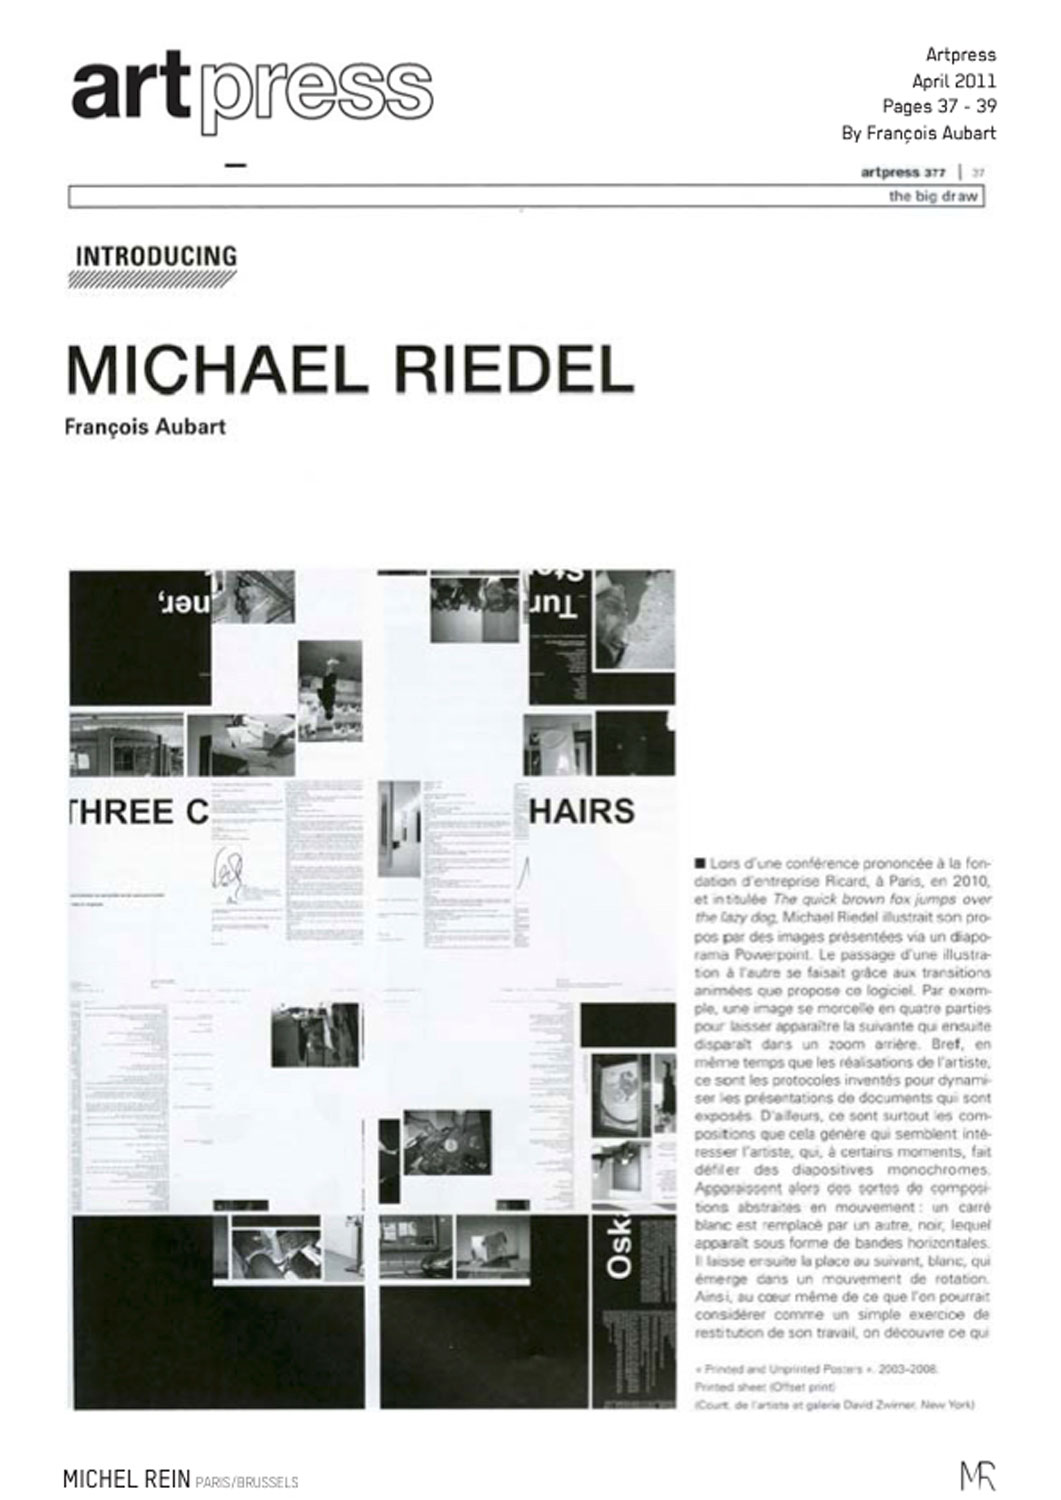 Michael Riedel - Artpress